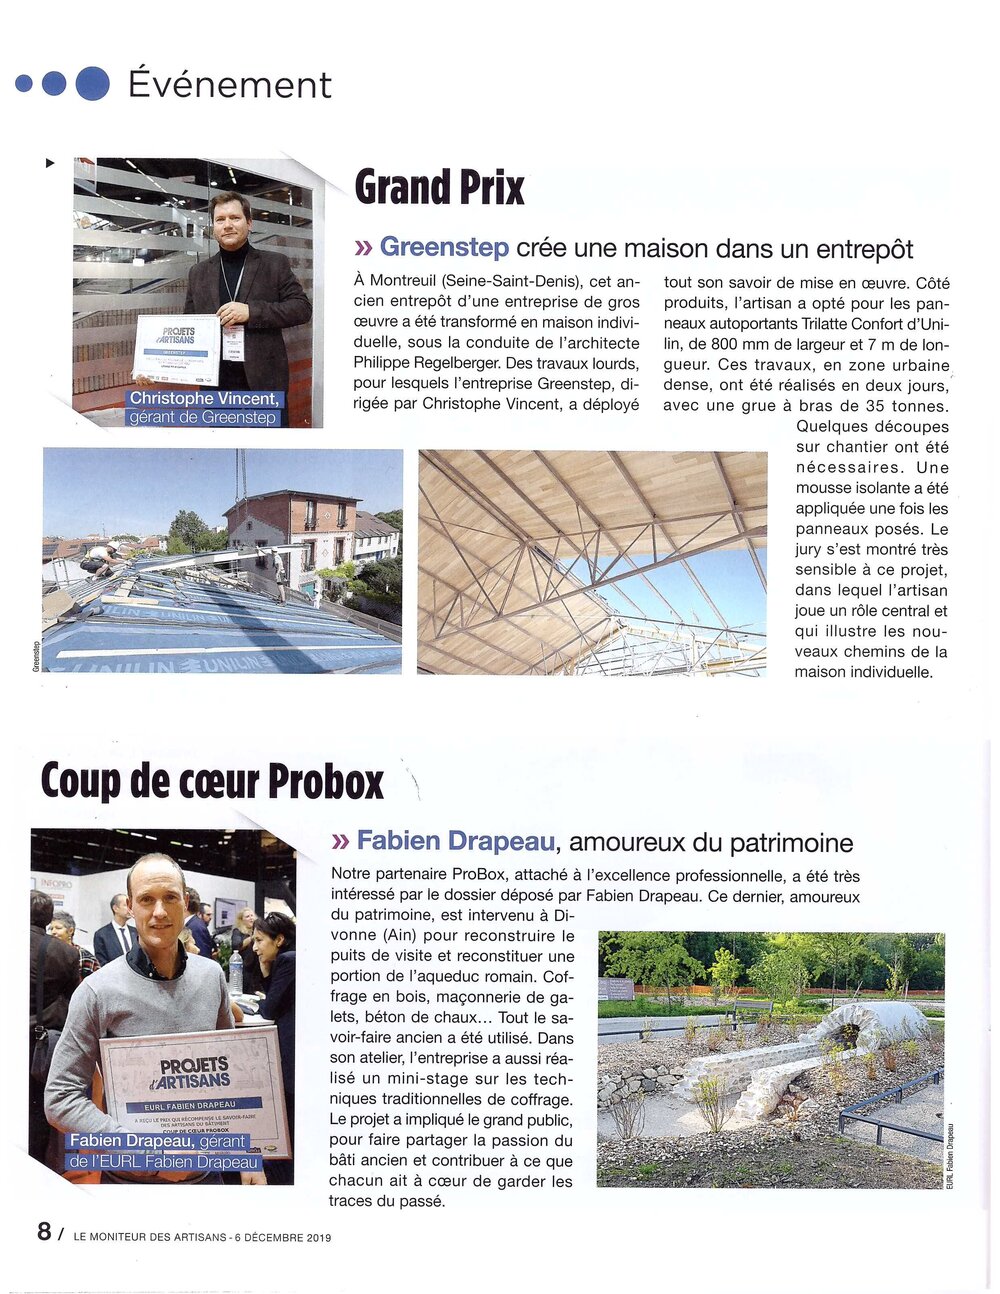 20191206_MONITEUR DES ARTISANS_article Grand Prix_page8.jpg